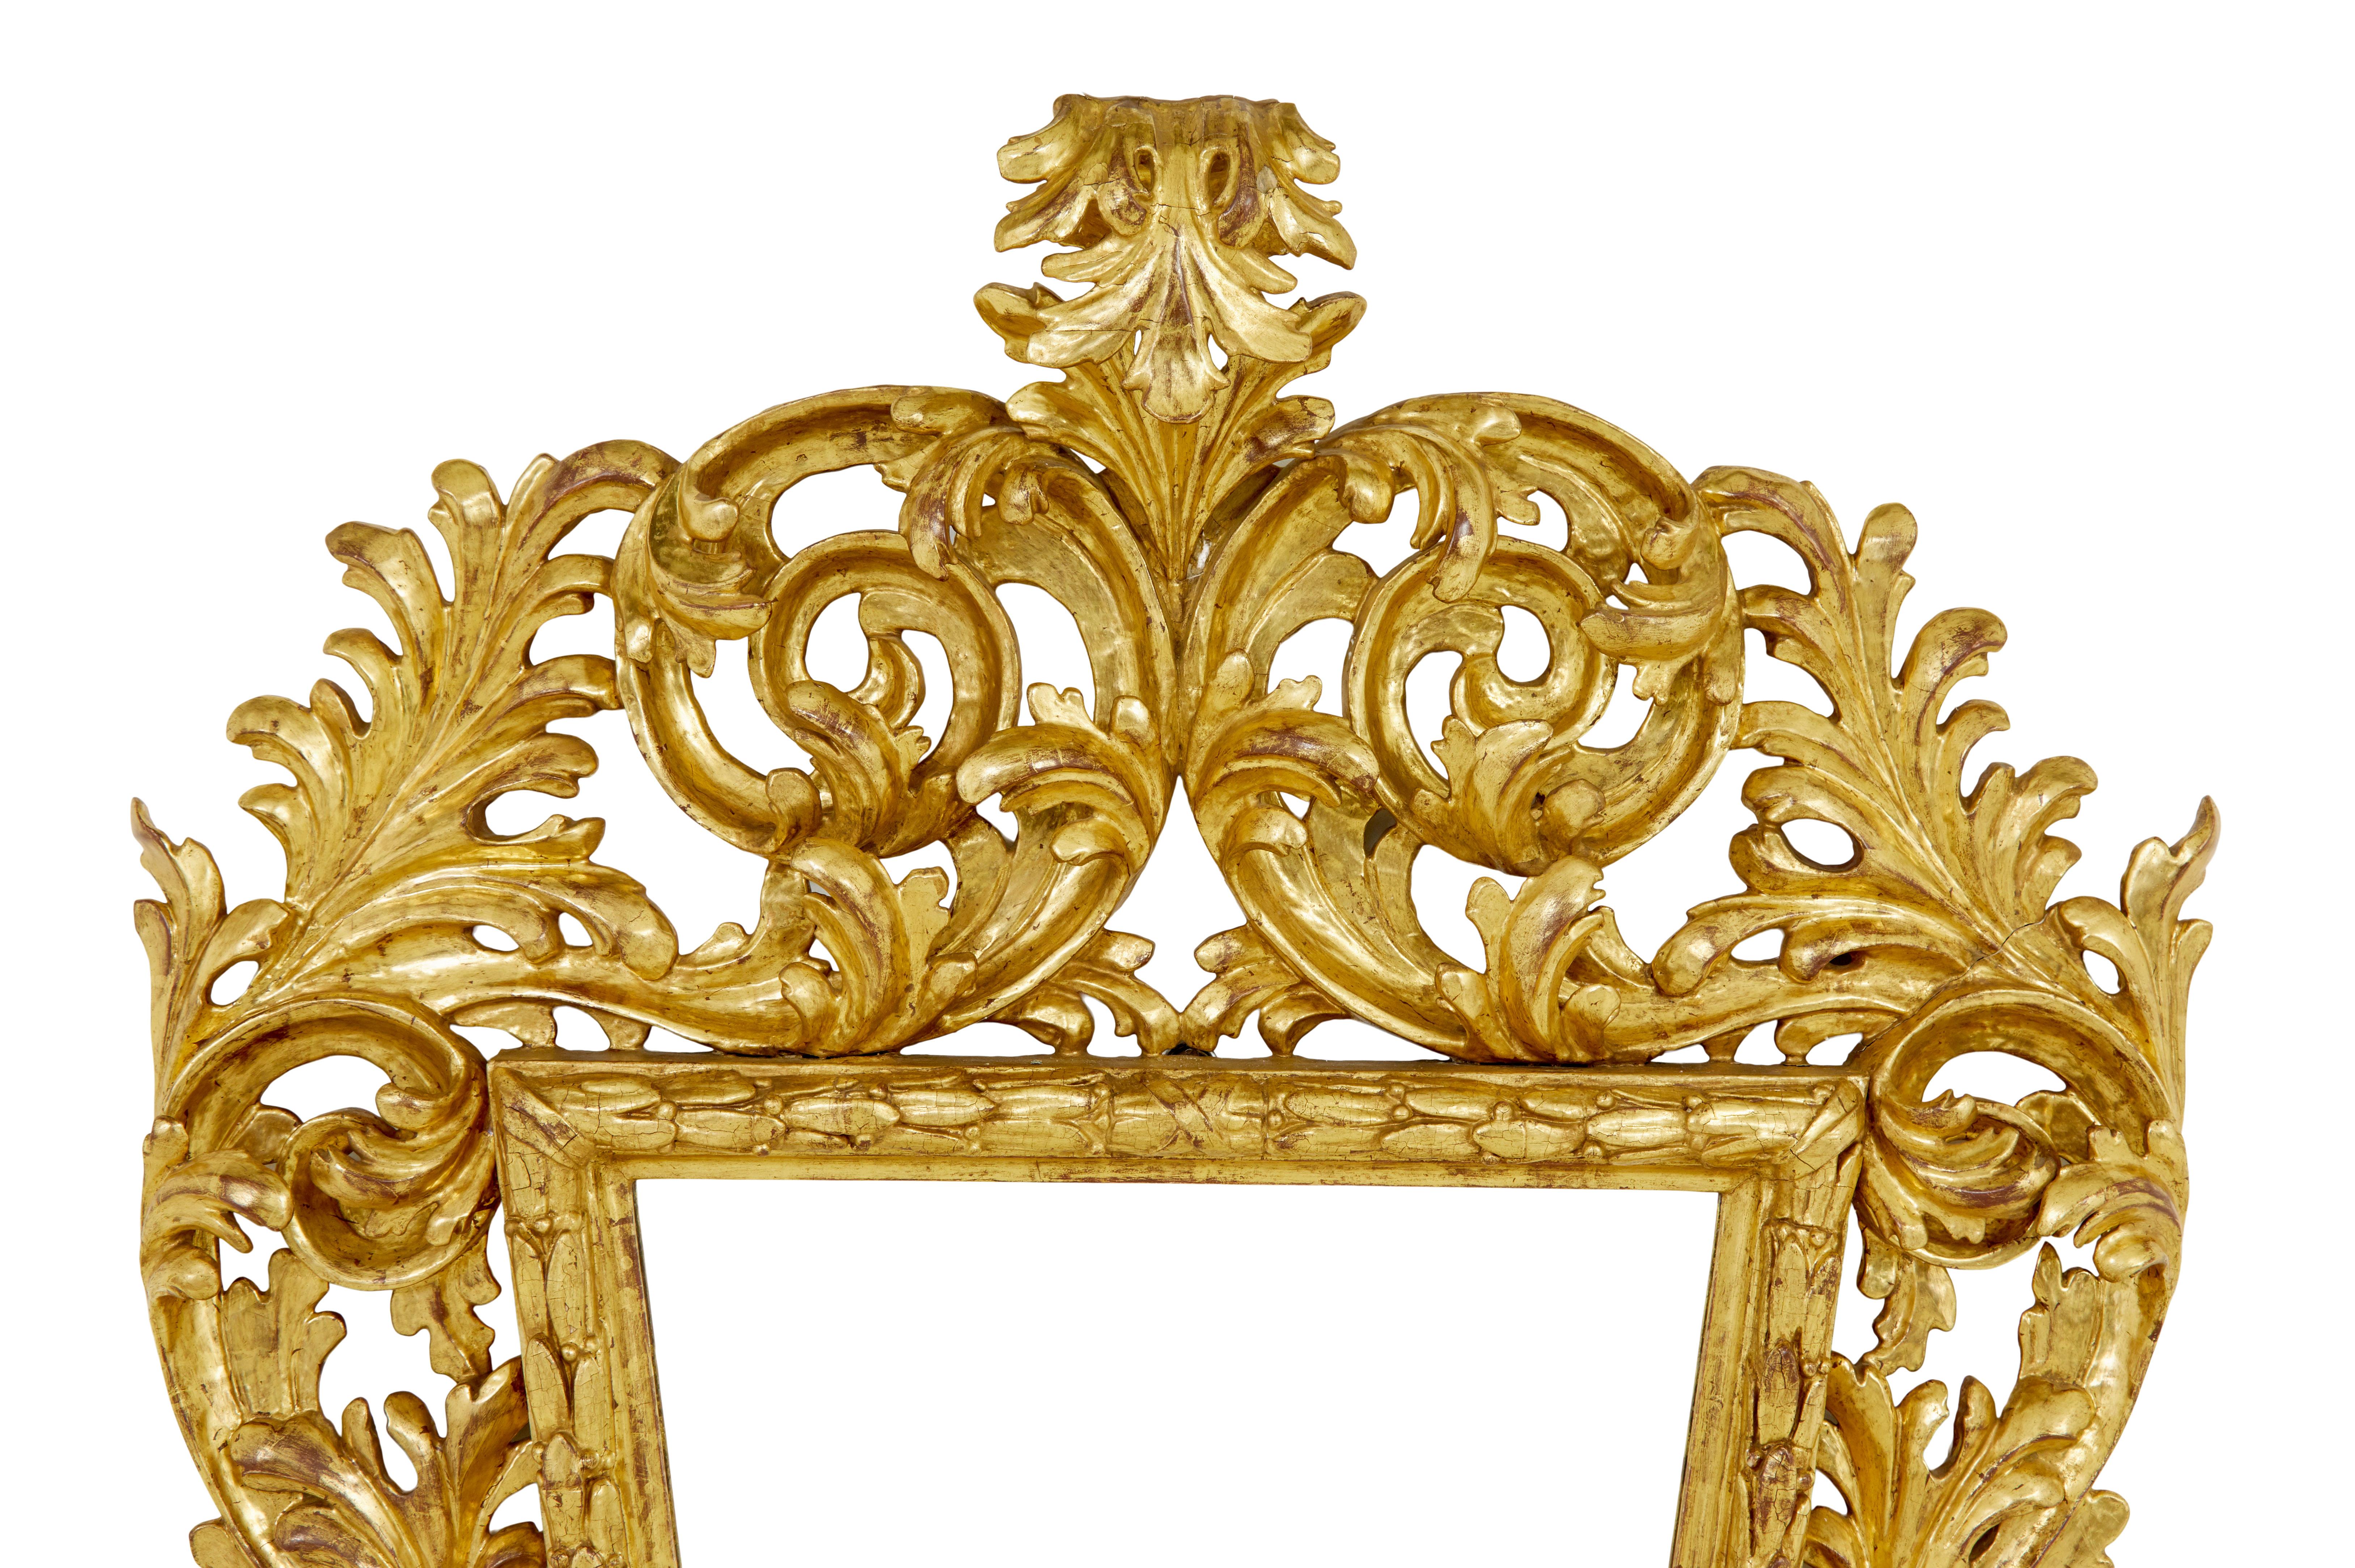 Miroir en bois doré rococo italien sculpté du XVIIIe siècle, vers 1730.

Superbe miroir en bois doré d'époque rococo de grandes proportions. Cadre abondamment sculpté avec beaucoup de profondeur dans la sculpture. Le miroir conique est entouré de